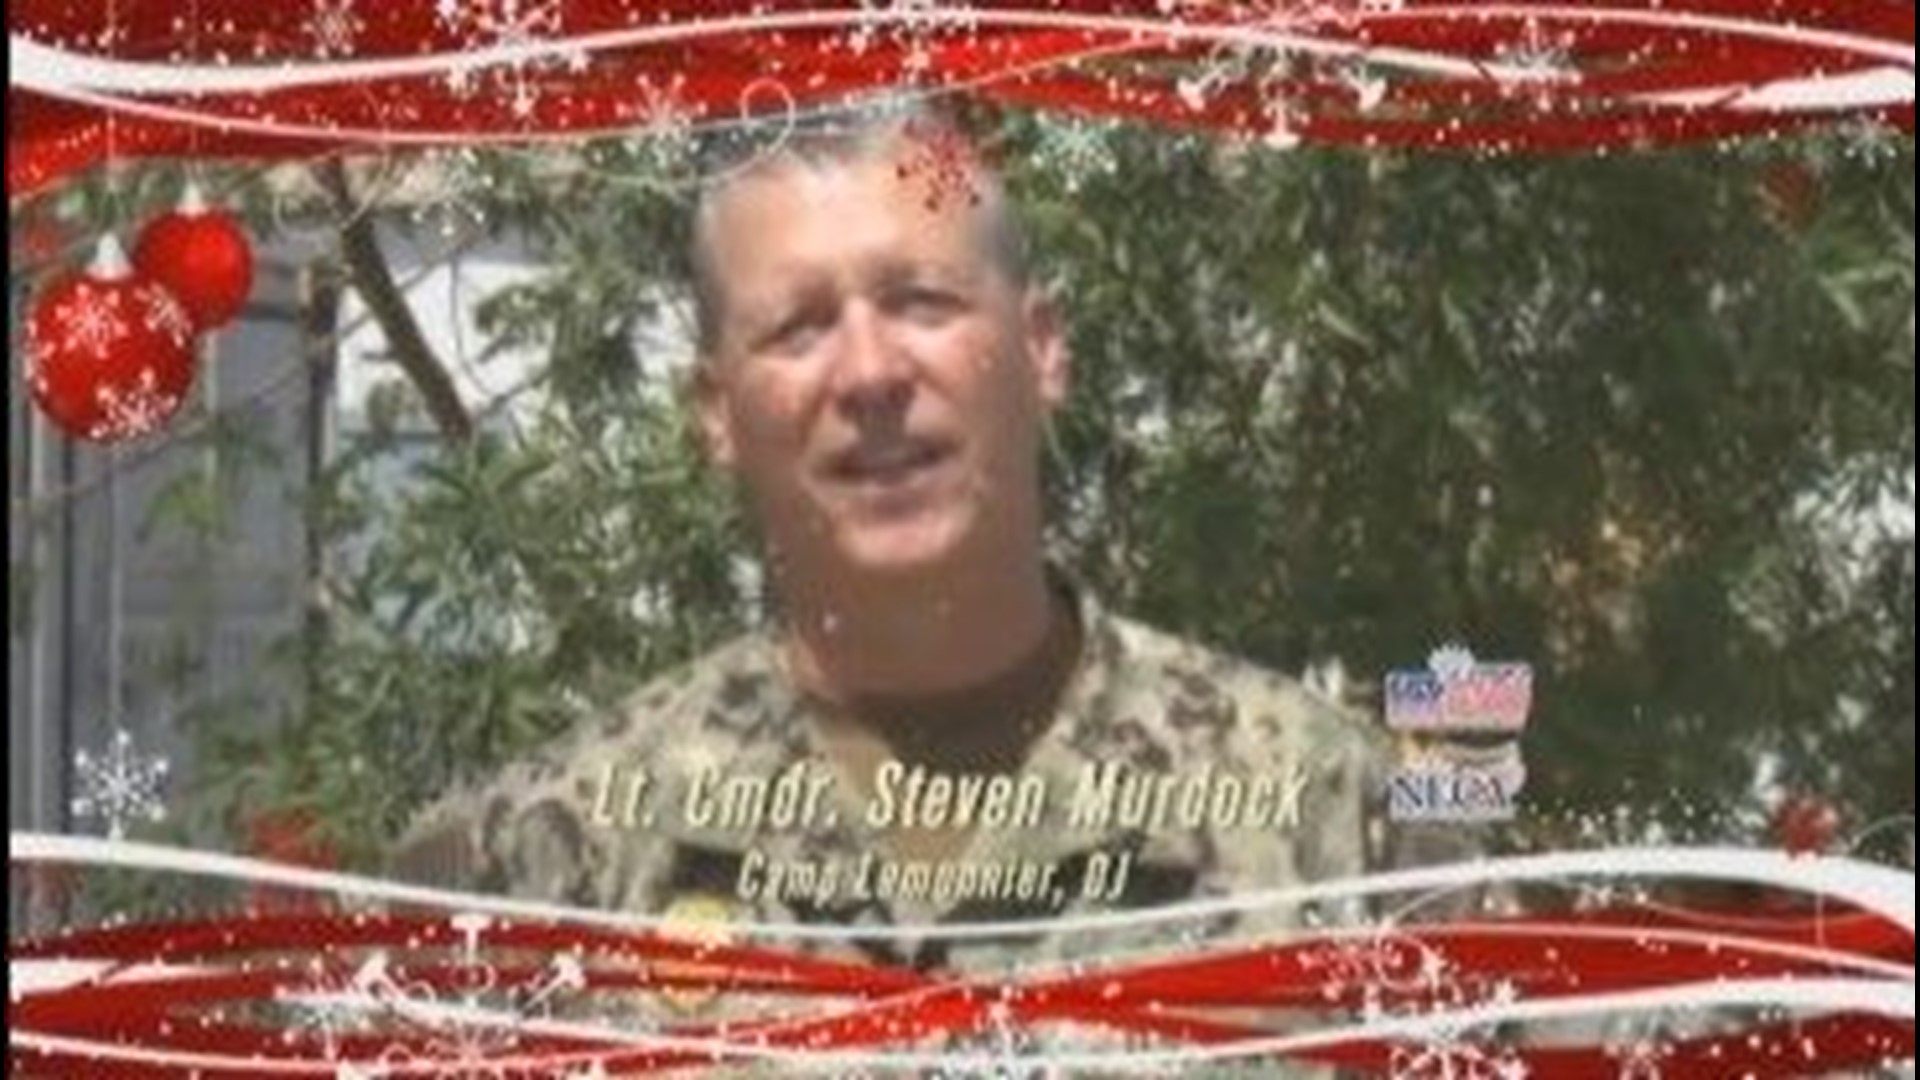 Military Mailbag: Lt. Cmdr. Steven Murdock